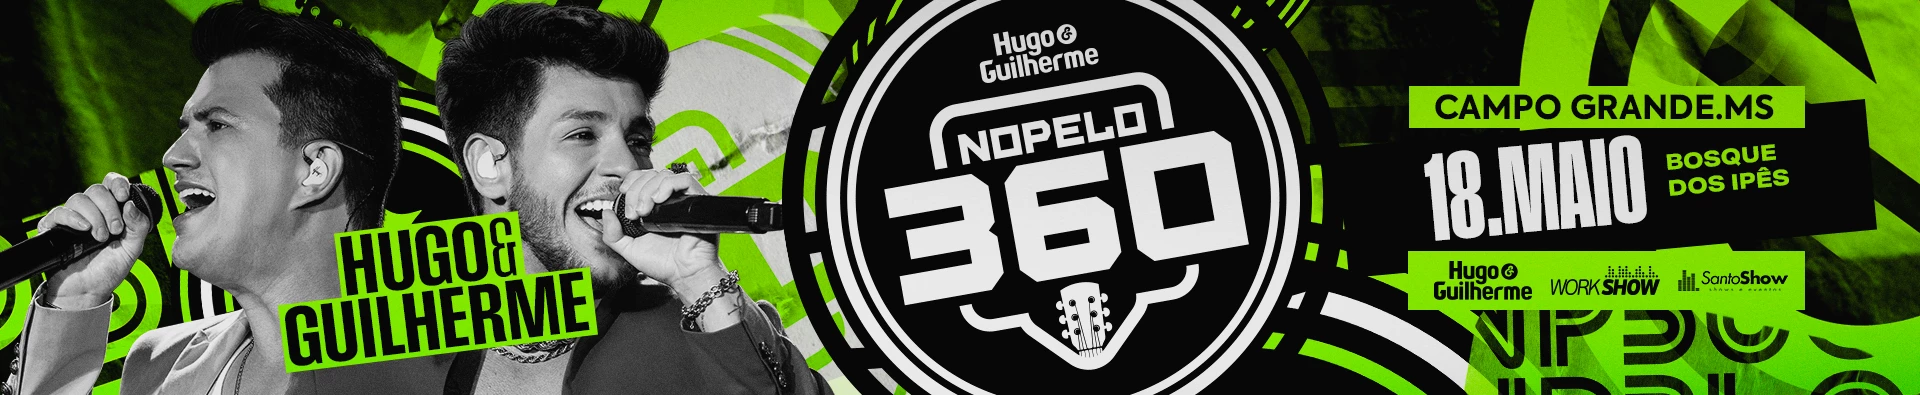 No pelo 360 - Hugo e Guilherme em Campo Grande